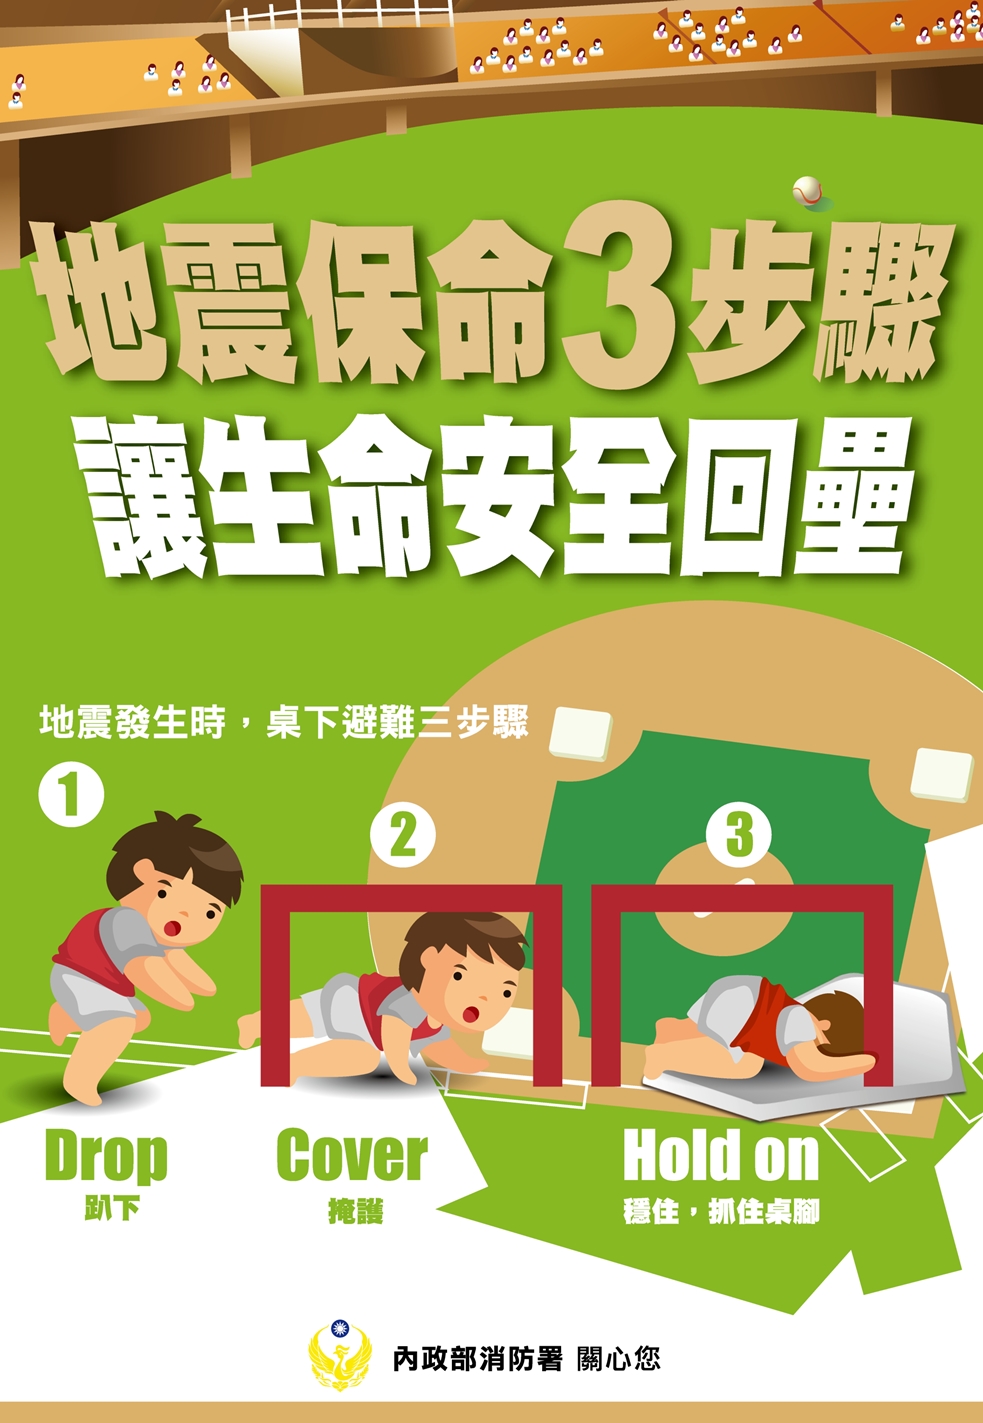 地震發生怎麼辦 保命3步驟「趴下、掩護、穩住」最重要影像